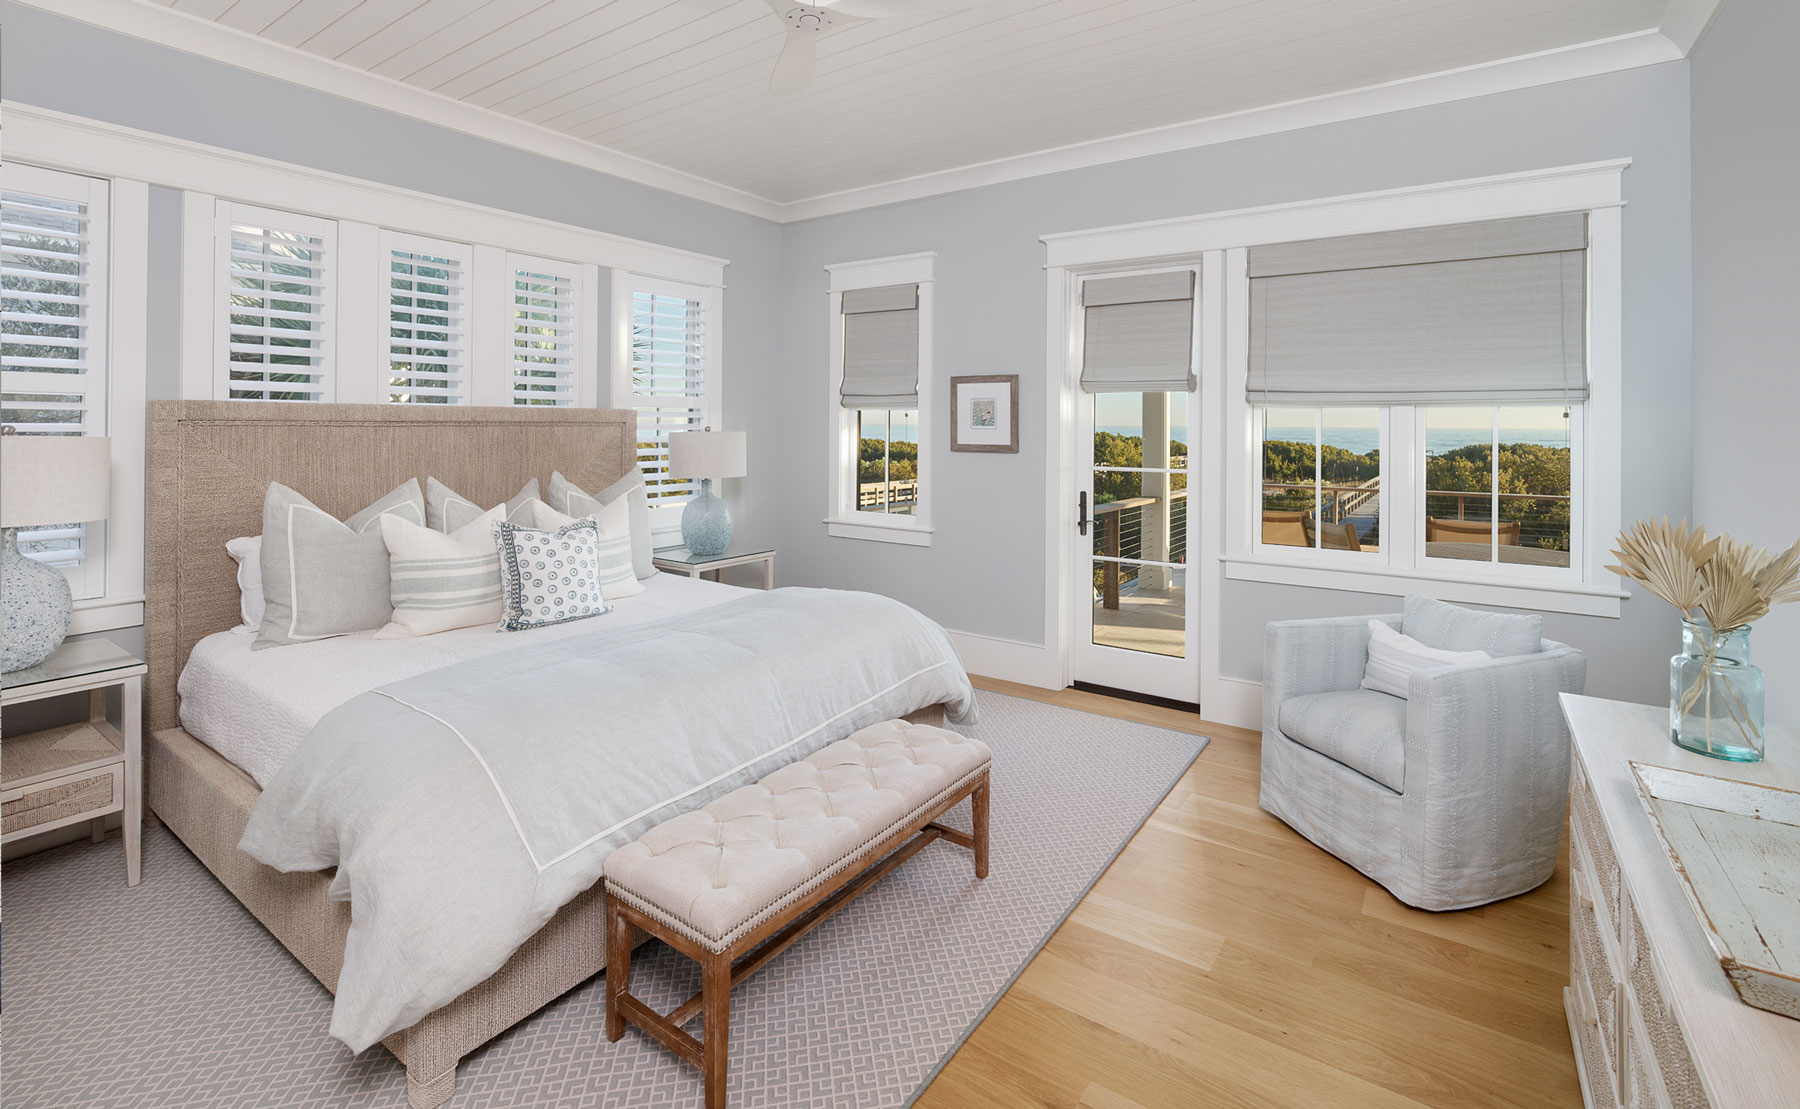 Guest bedroom suite with ocean view